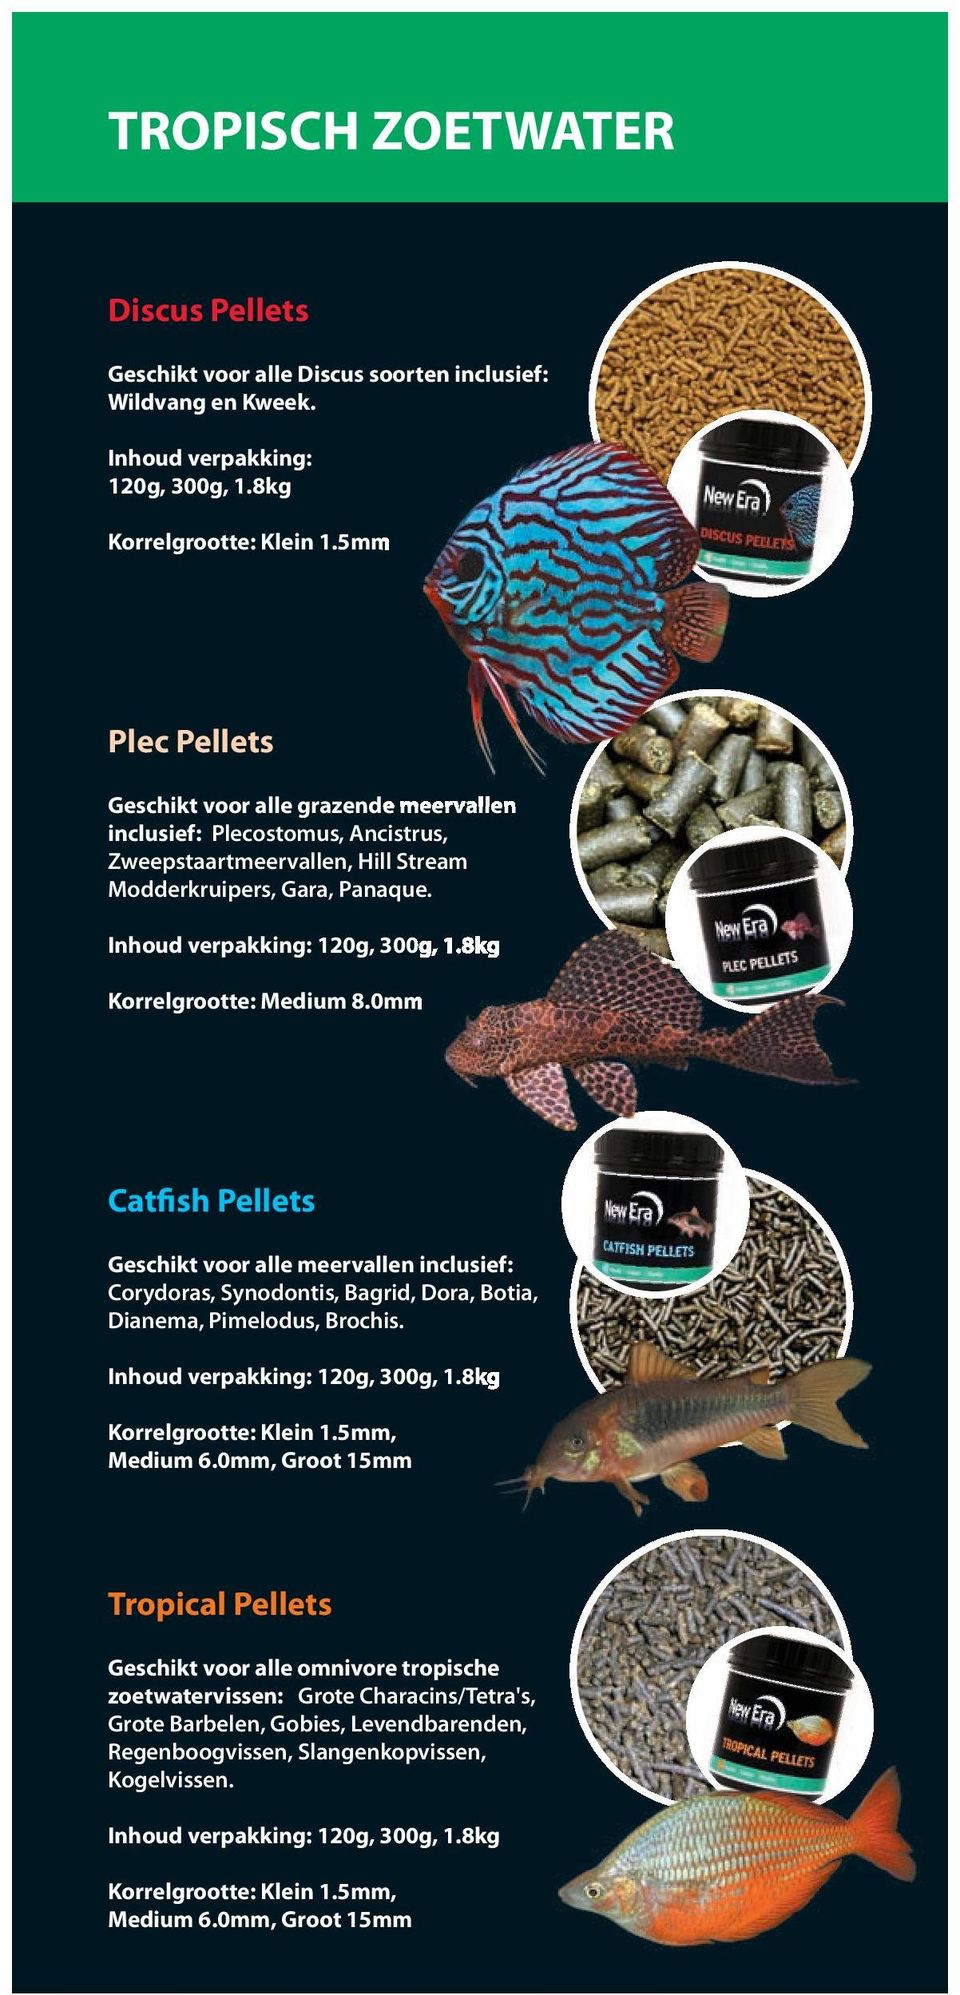 0mm Catfish Pellets Geschikt voor alle meervallen inclusief: Corydoras, Synodontis, Bagrid, Dora, Botia, Dianema, Pimelodus, Brochis. Korrelgrootte: Klein 1.5mm, Medium 6.